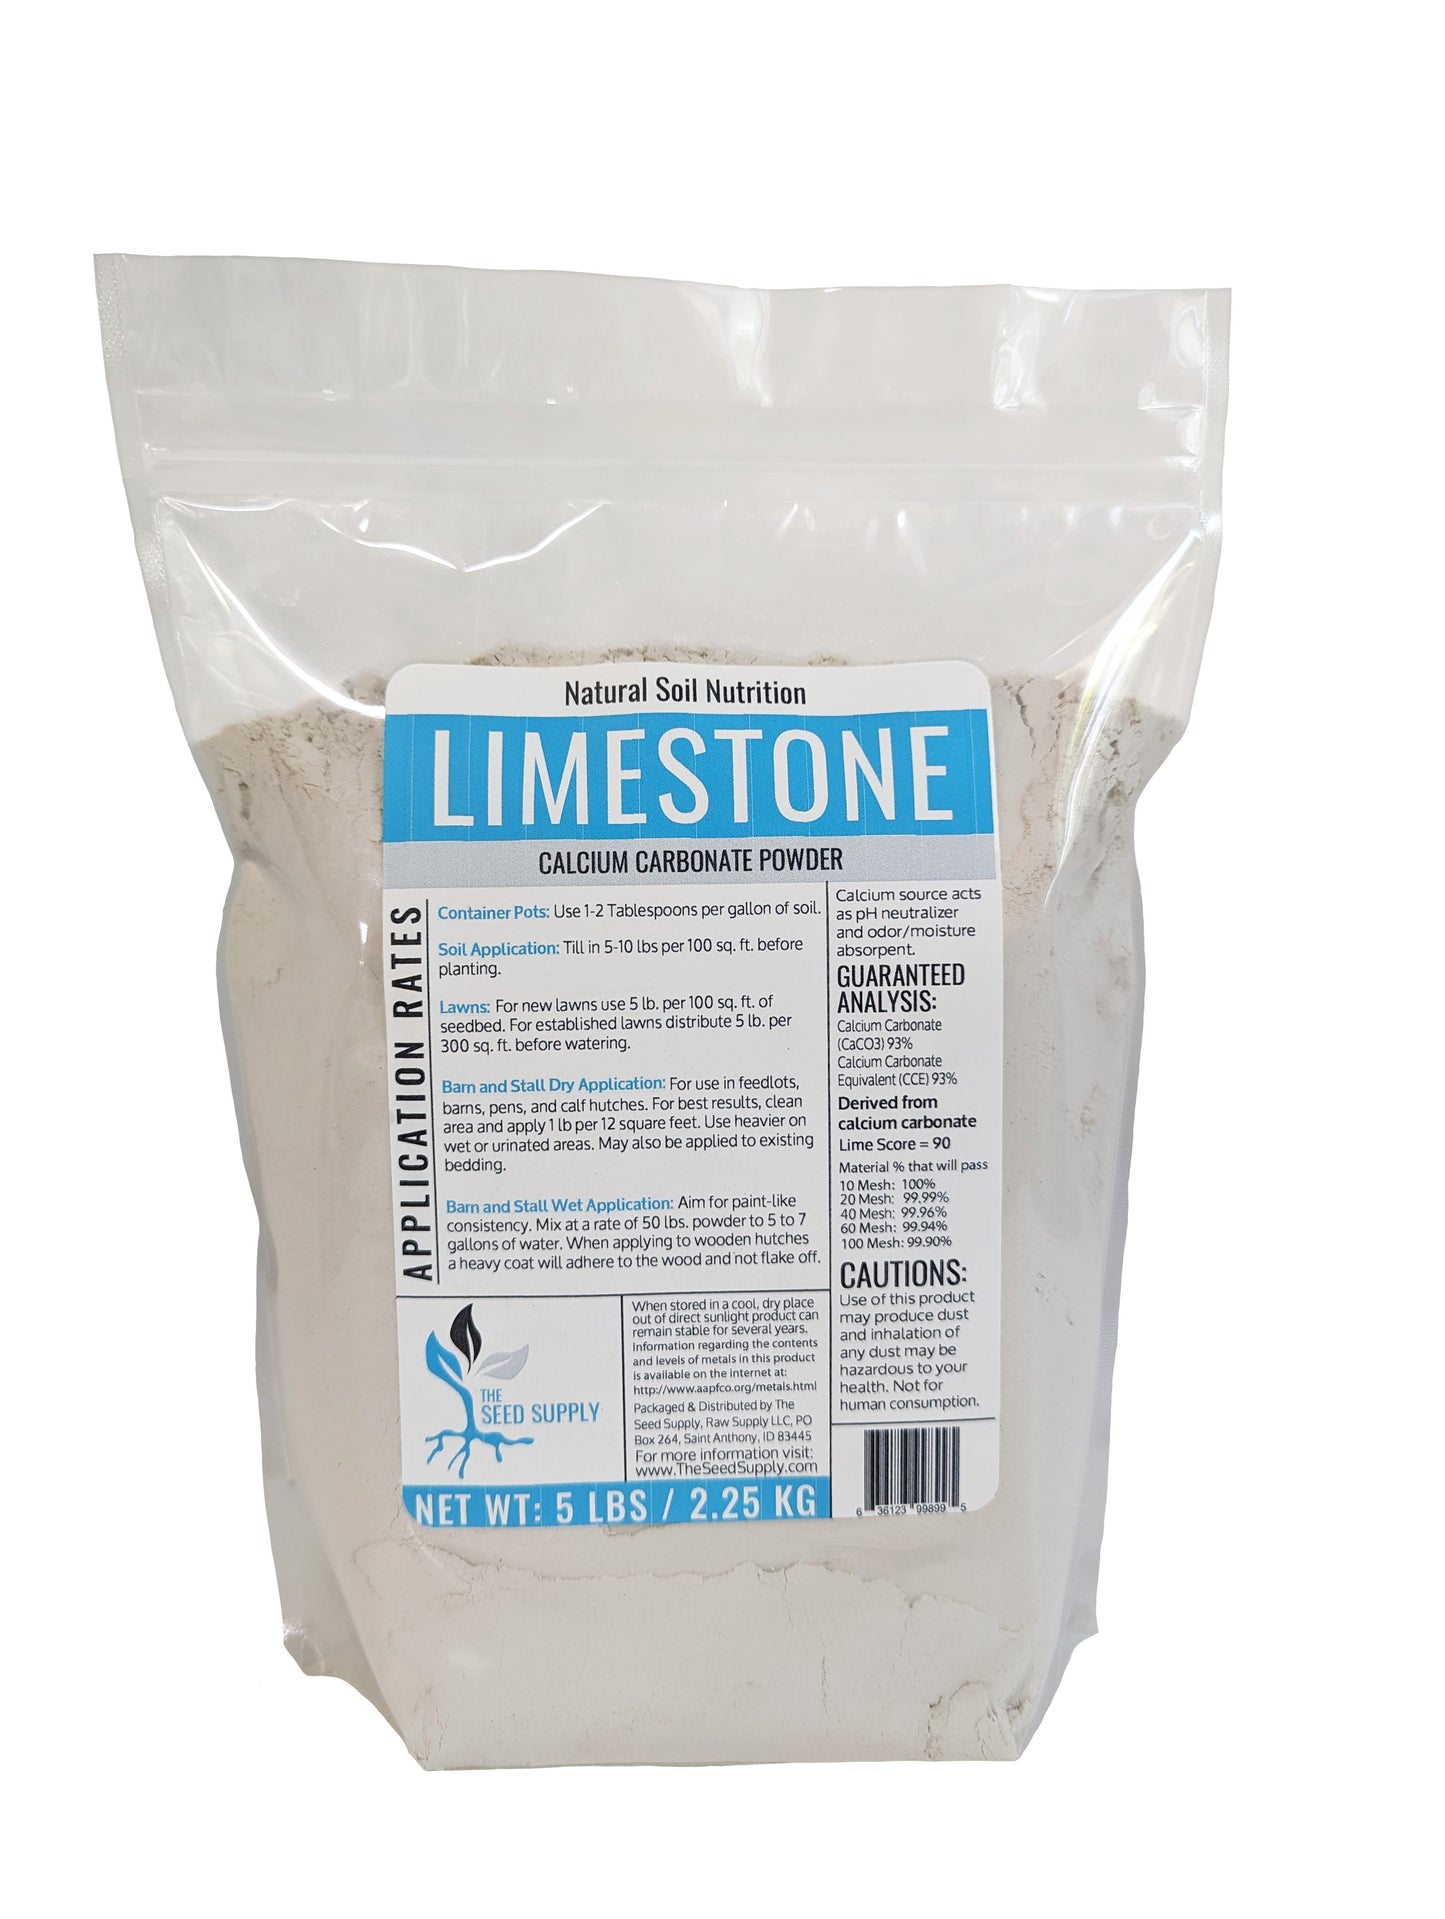 Calcium Carbonate Limestone